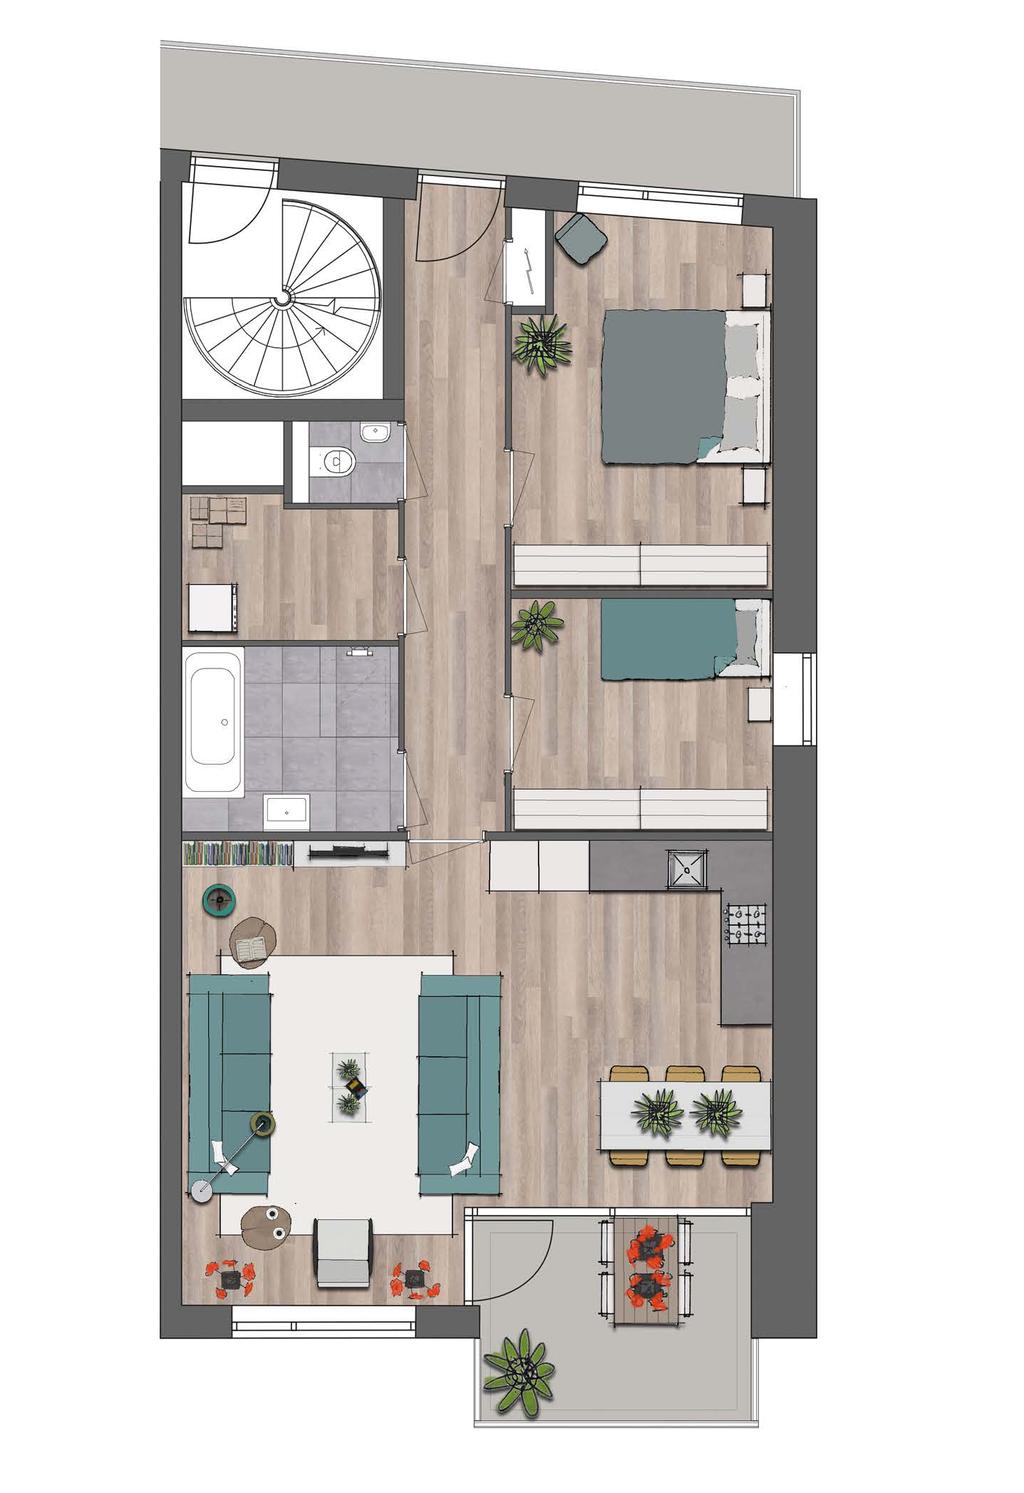 woonkamer met open keuken 1e verdieping bnr. 18 bnr. 17 5520 mm 4277 mm 2 ruime slaapkamers het volledige appartement is voorzien van bnr. 16 vloerverwarming compleet afgewerkte SieMatic keuken, bnr.